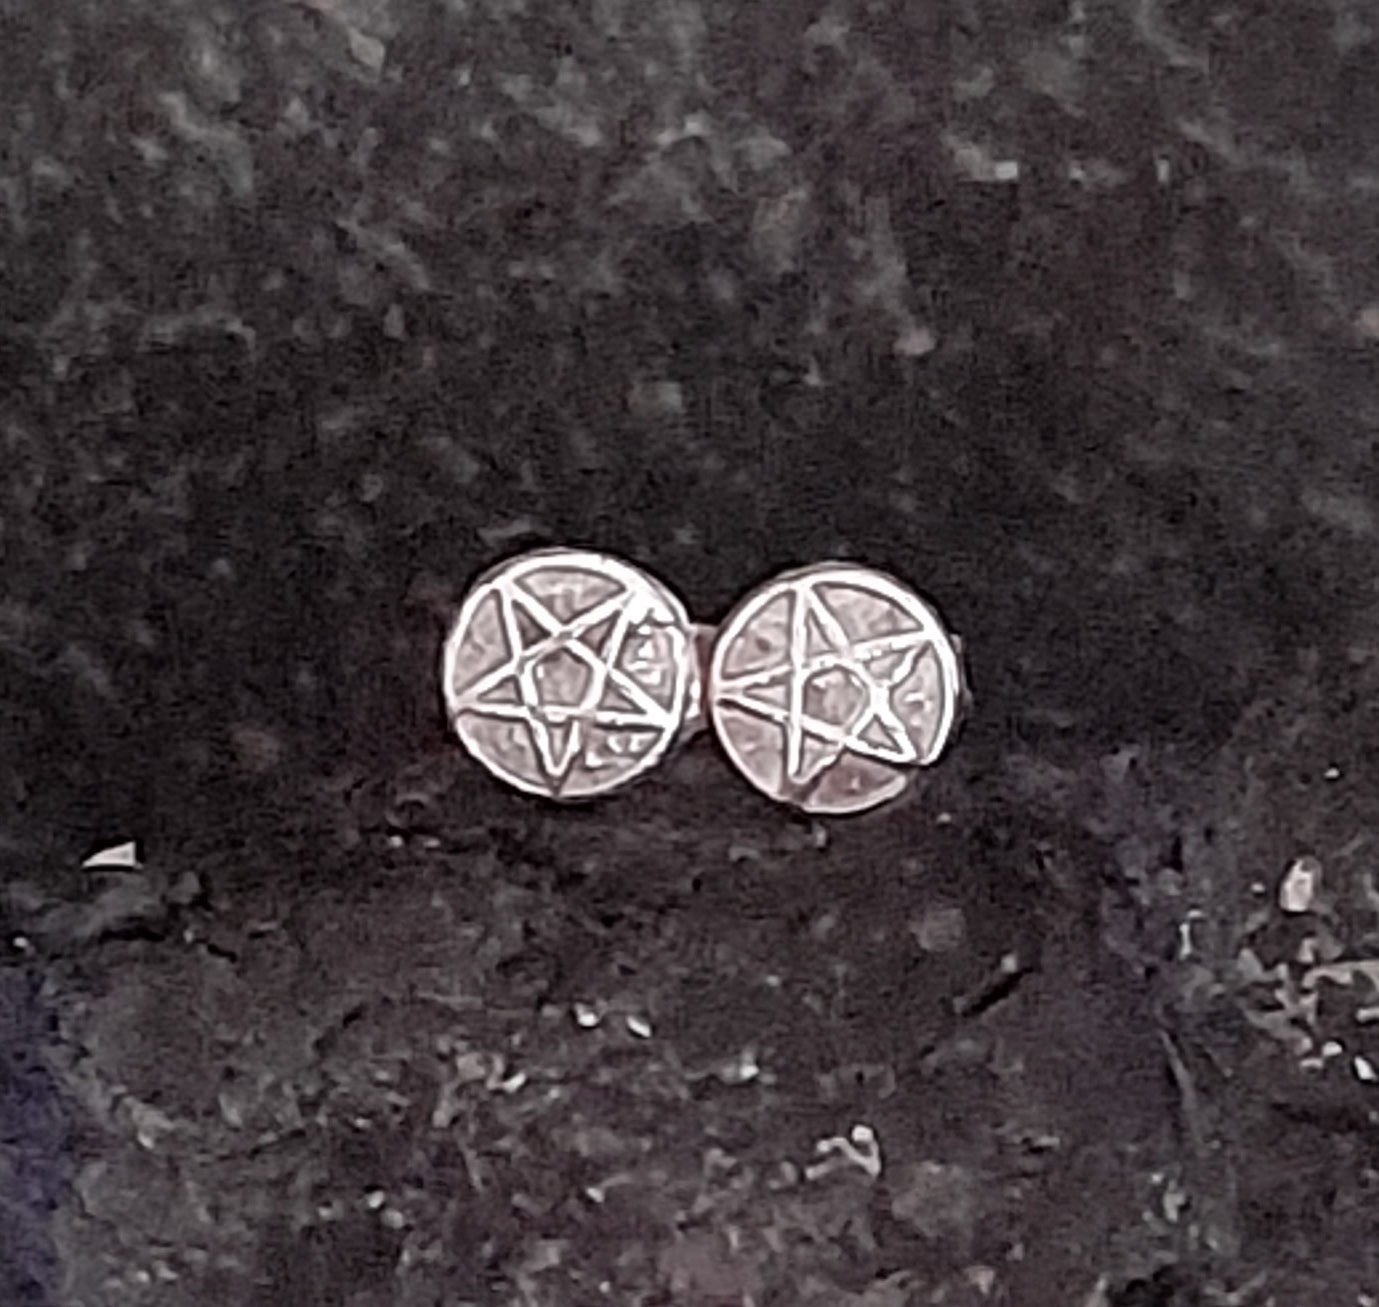 Pentagram Sterling Silver Stud Earrings - Arborvitae Designs